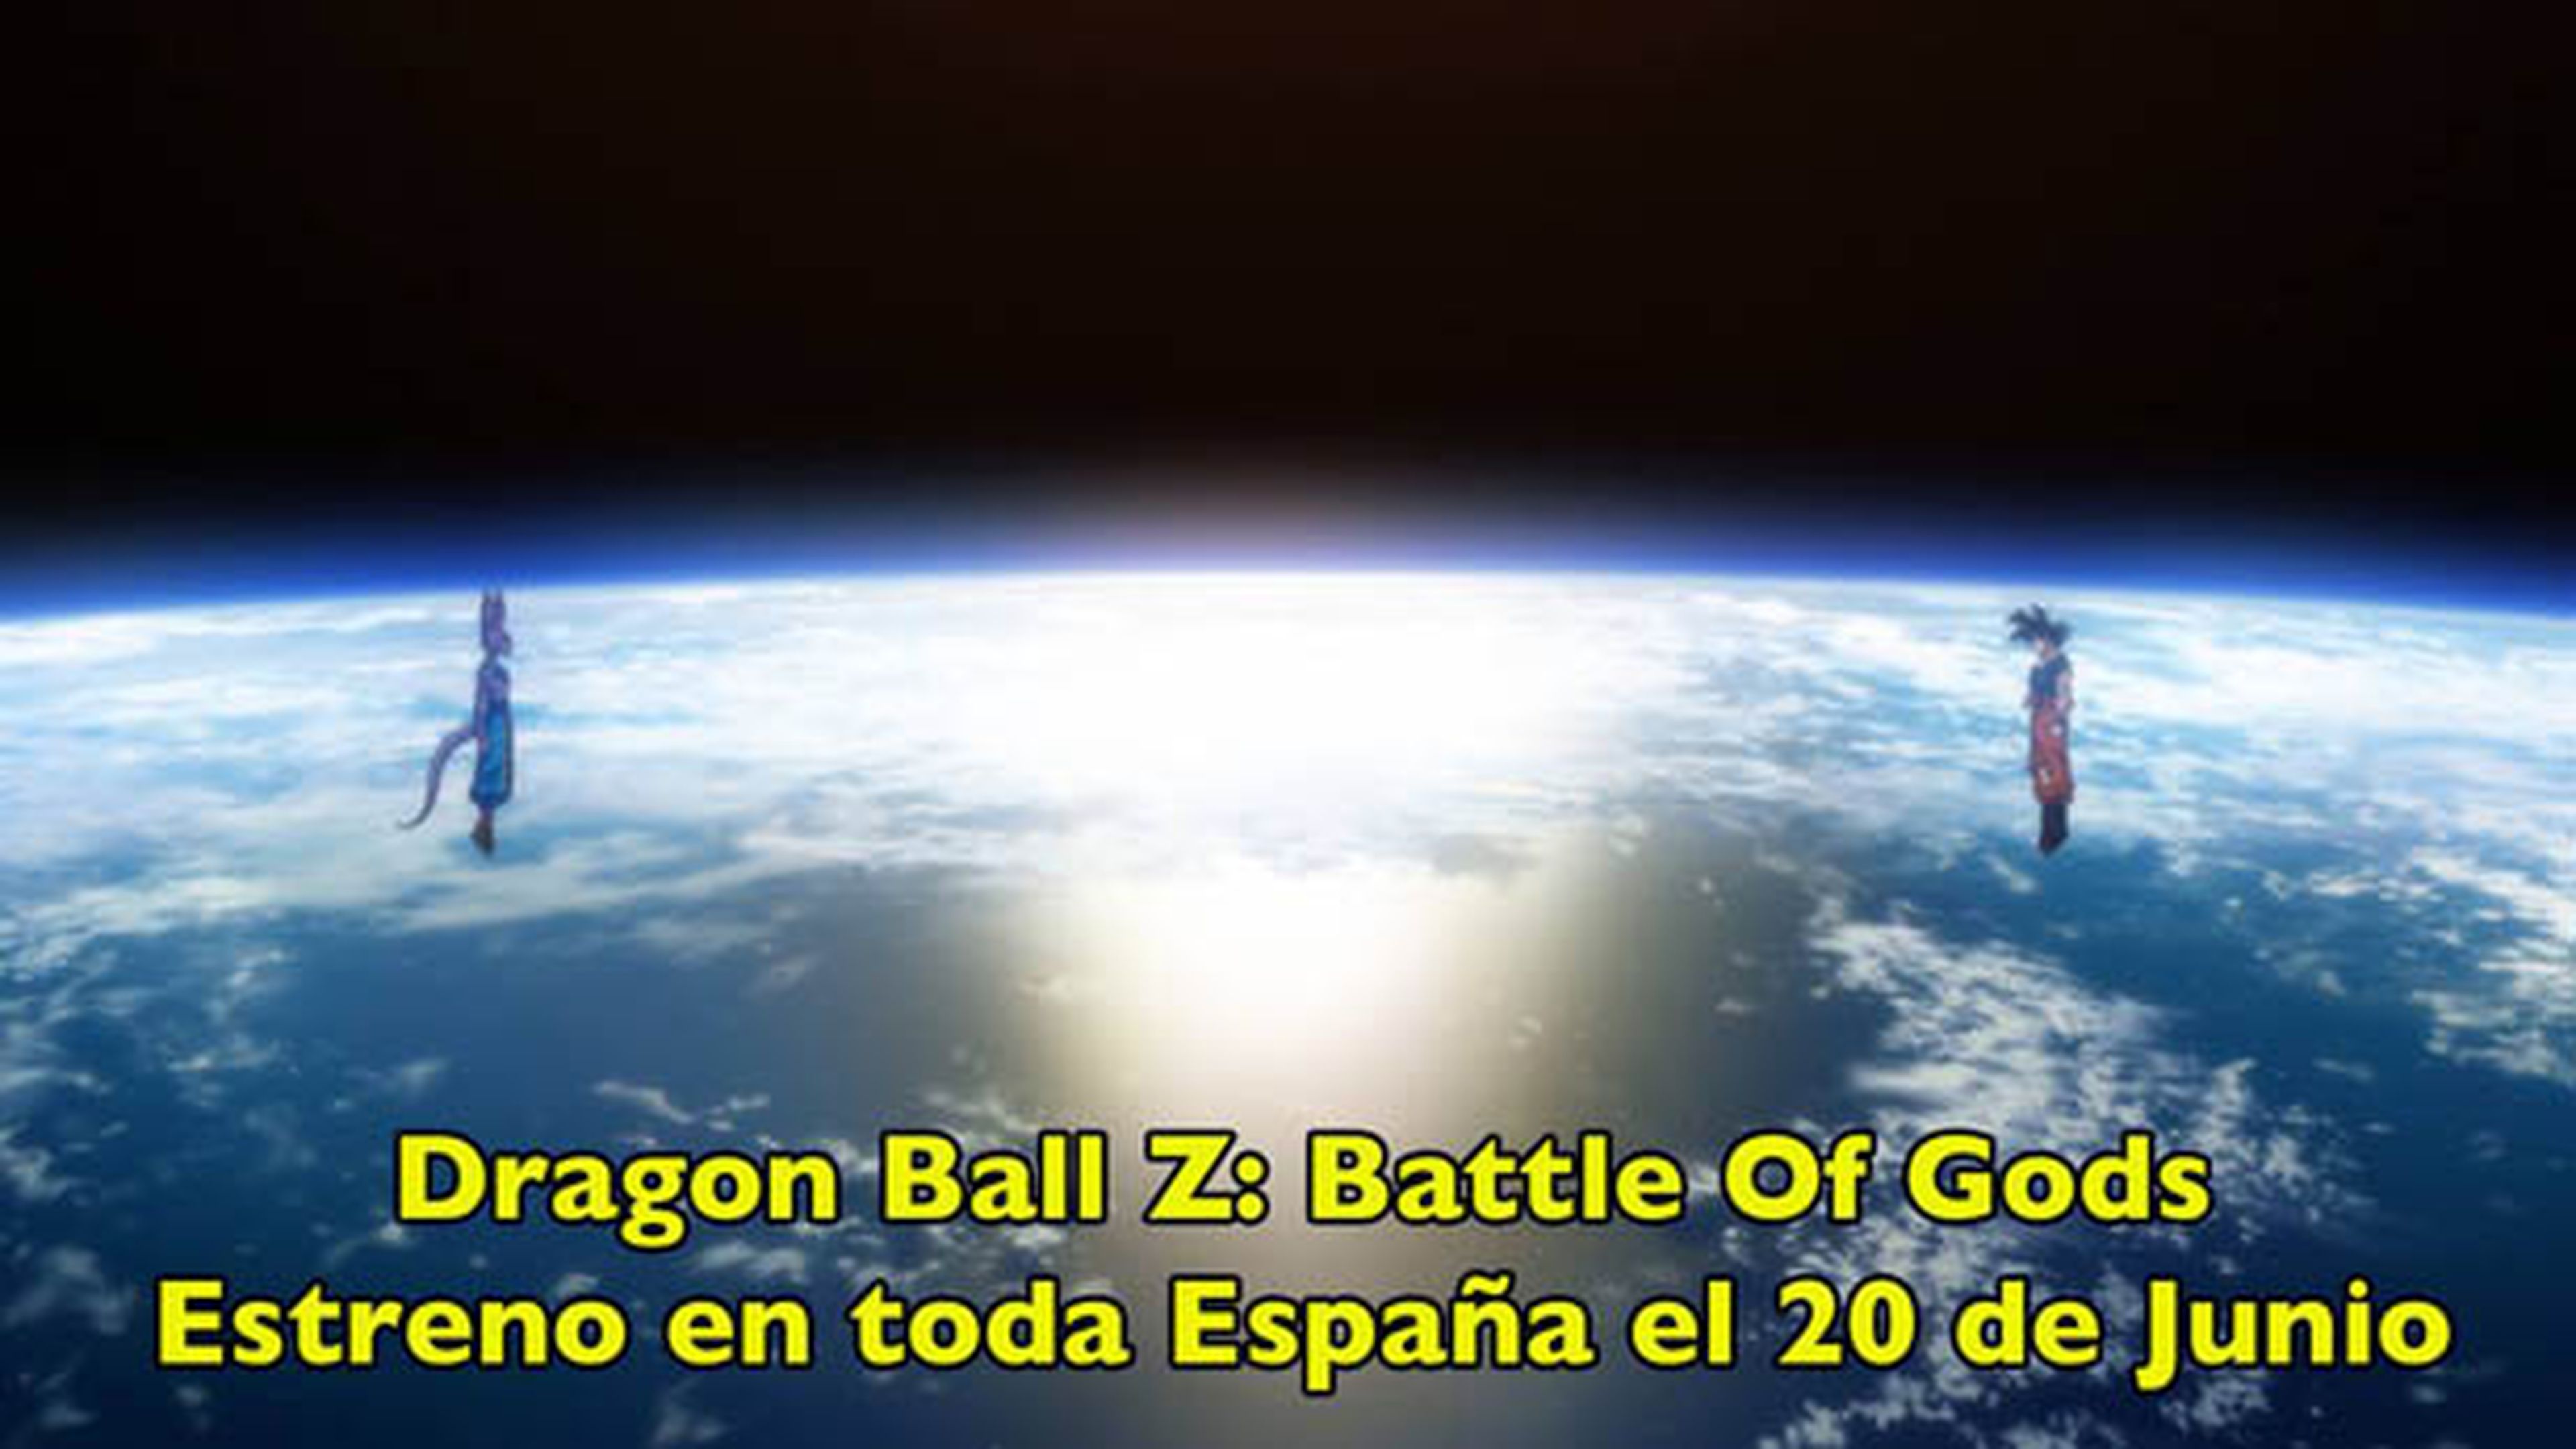 DBZ: Battle of Gods, el 20 de junio en toda España